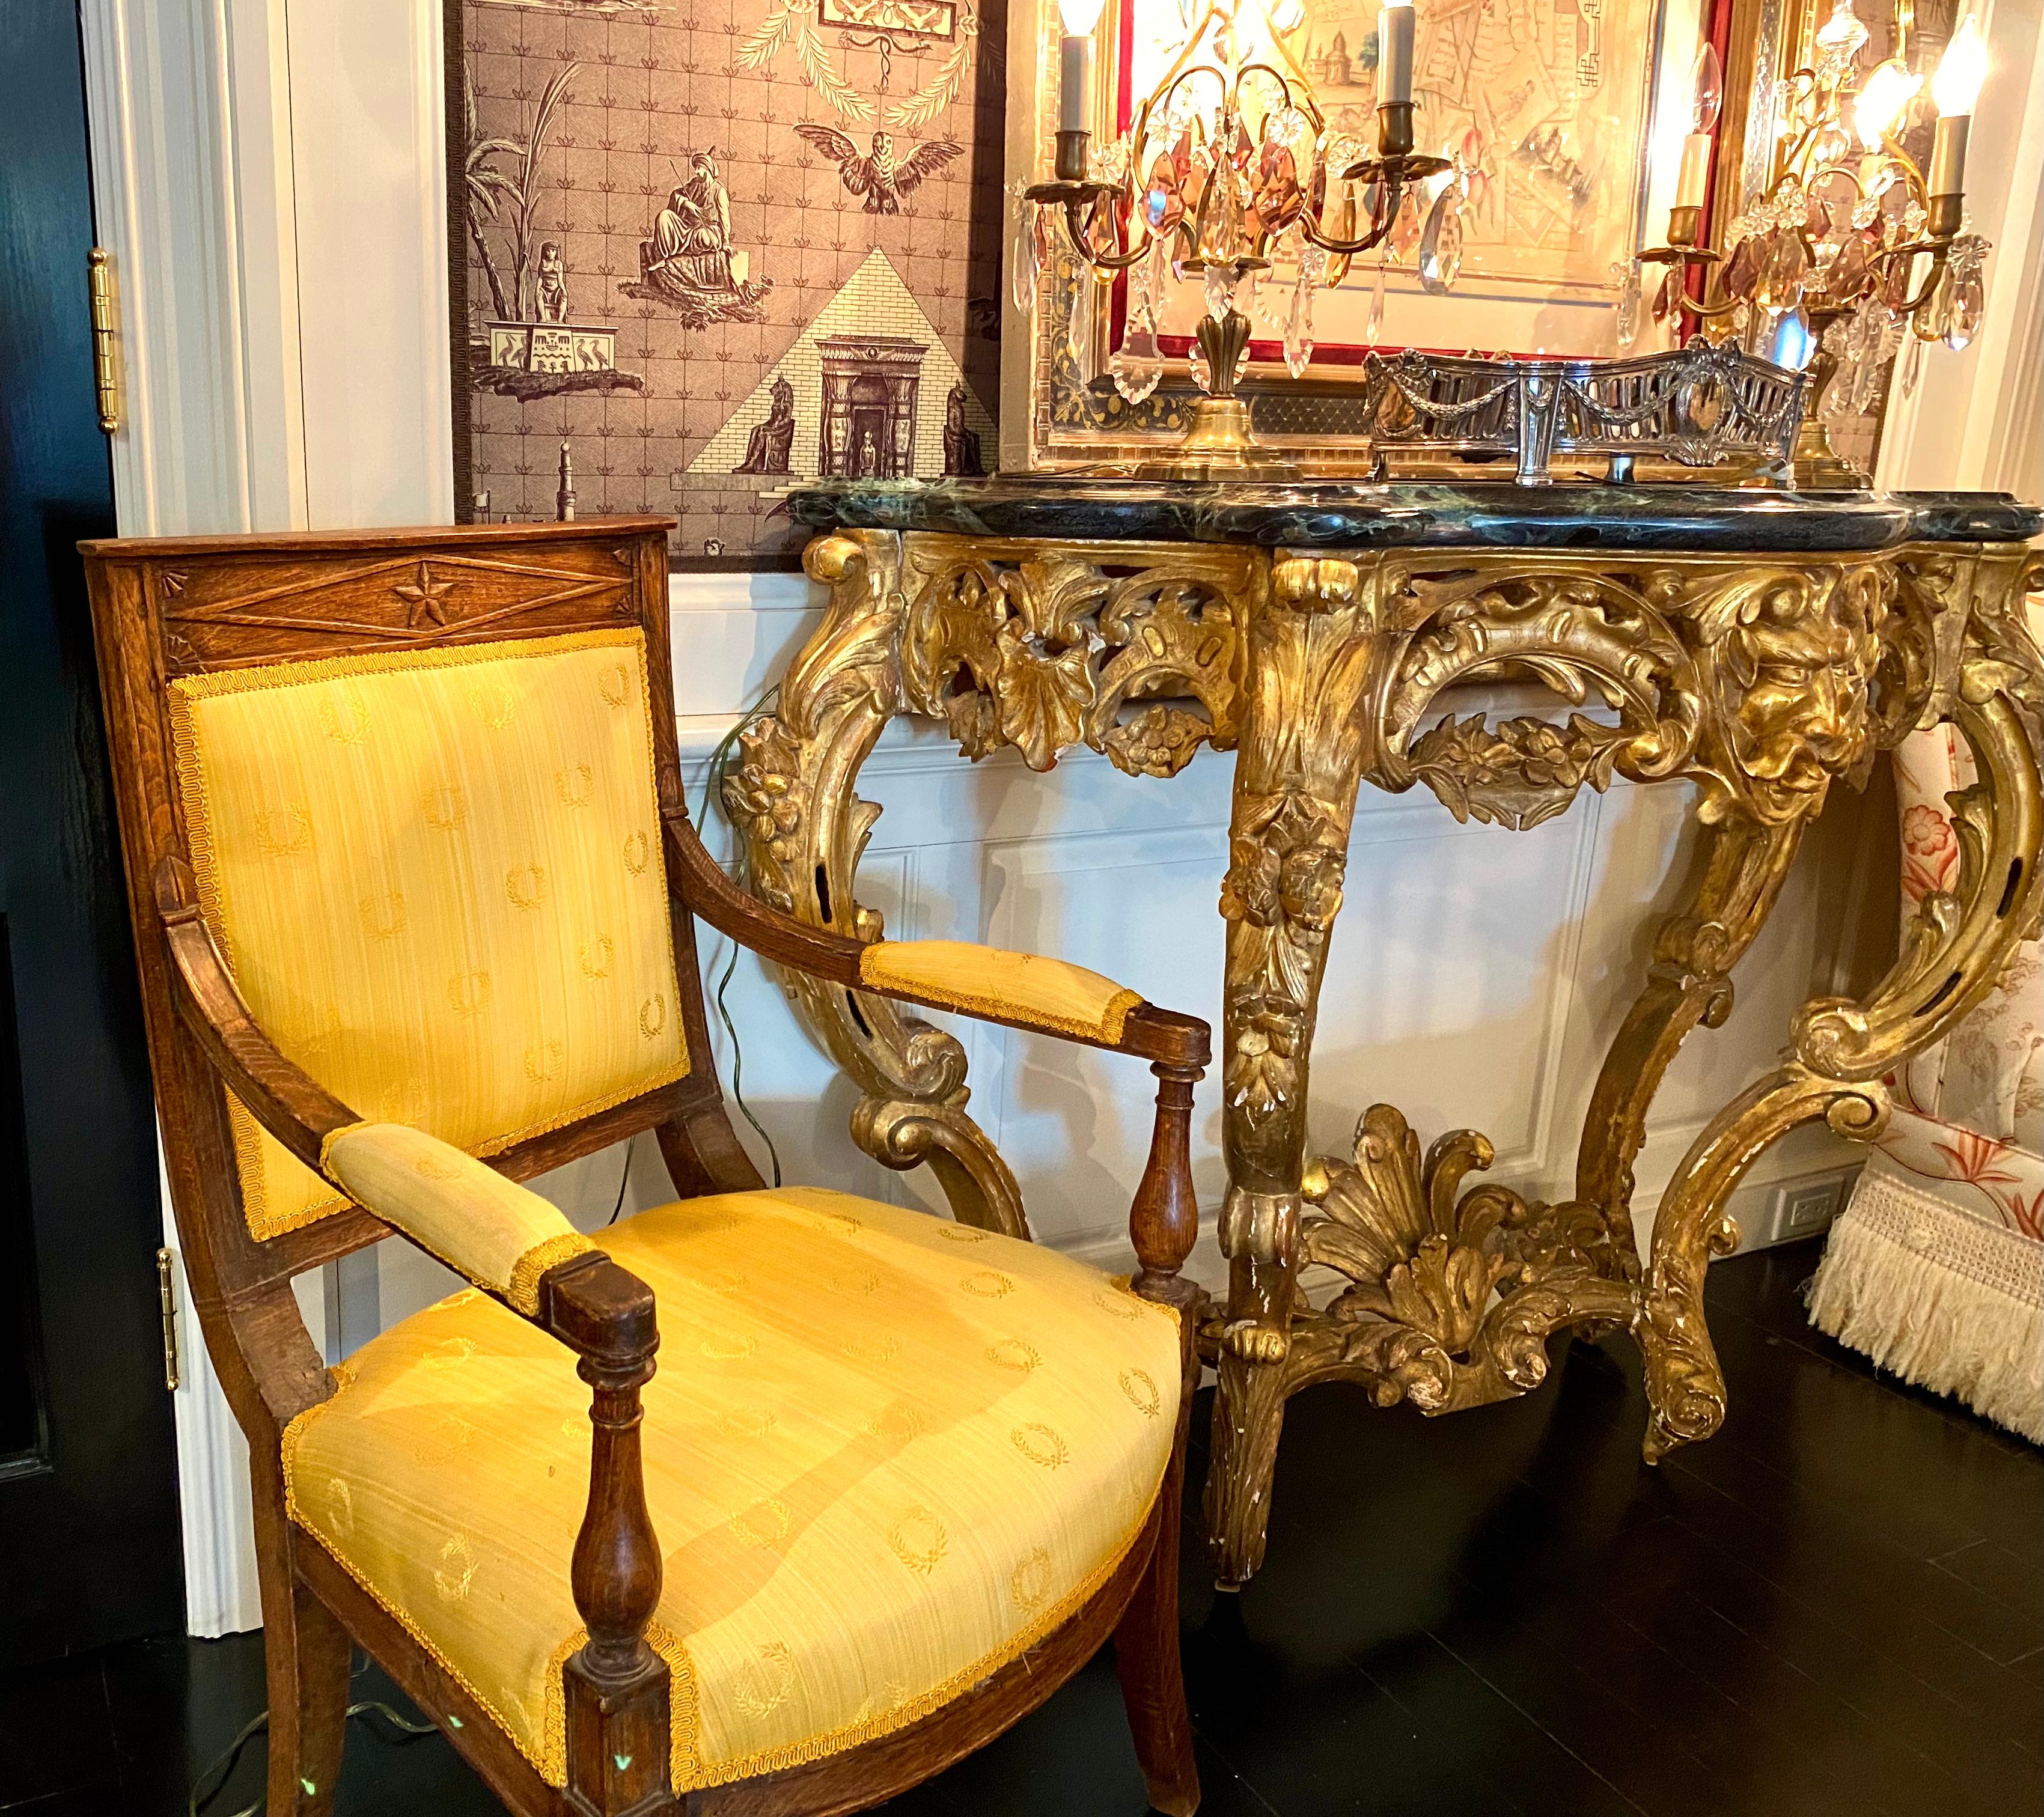 Un beau et rare fauteuil provençal Napoléon Ier, Premier Empire, du début du XIXe siècle, une pièce d'époque, nouvellement tapissée dans le tissu traditionnel à motif de couronne de feuilles de laurier et la couleur de l'époque. La pureté de ses